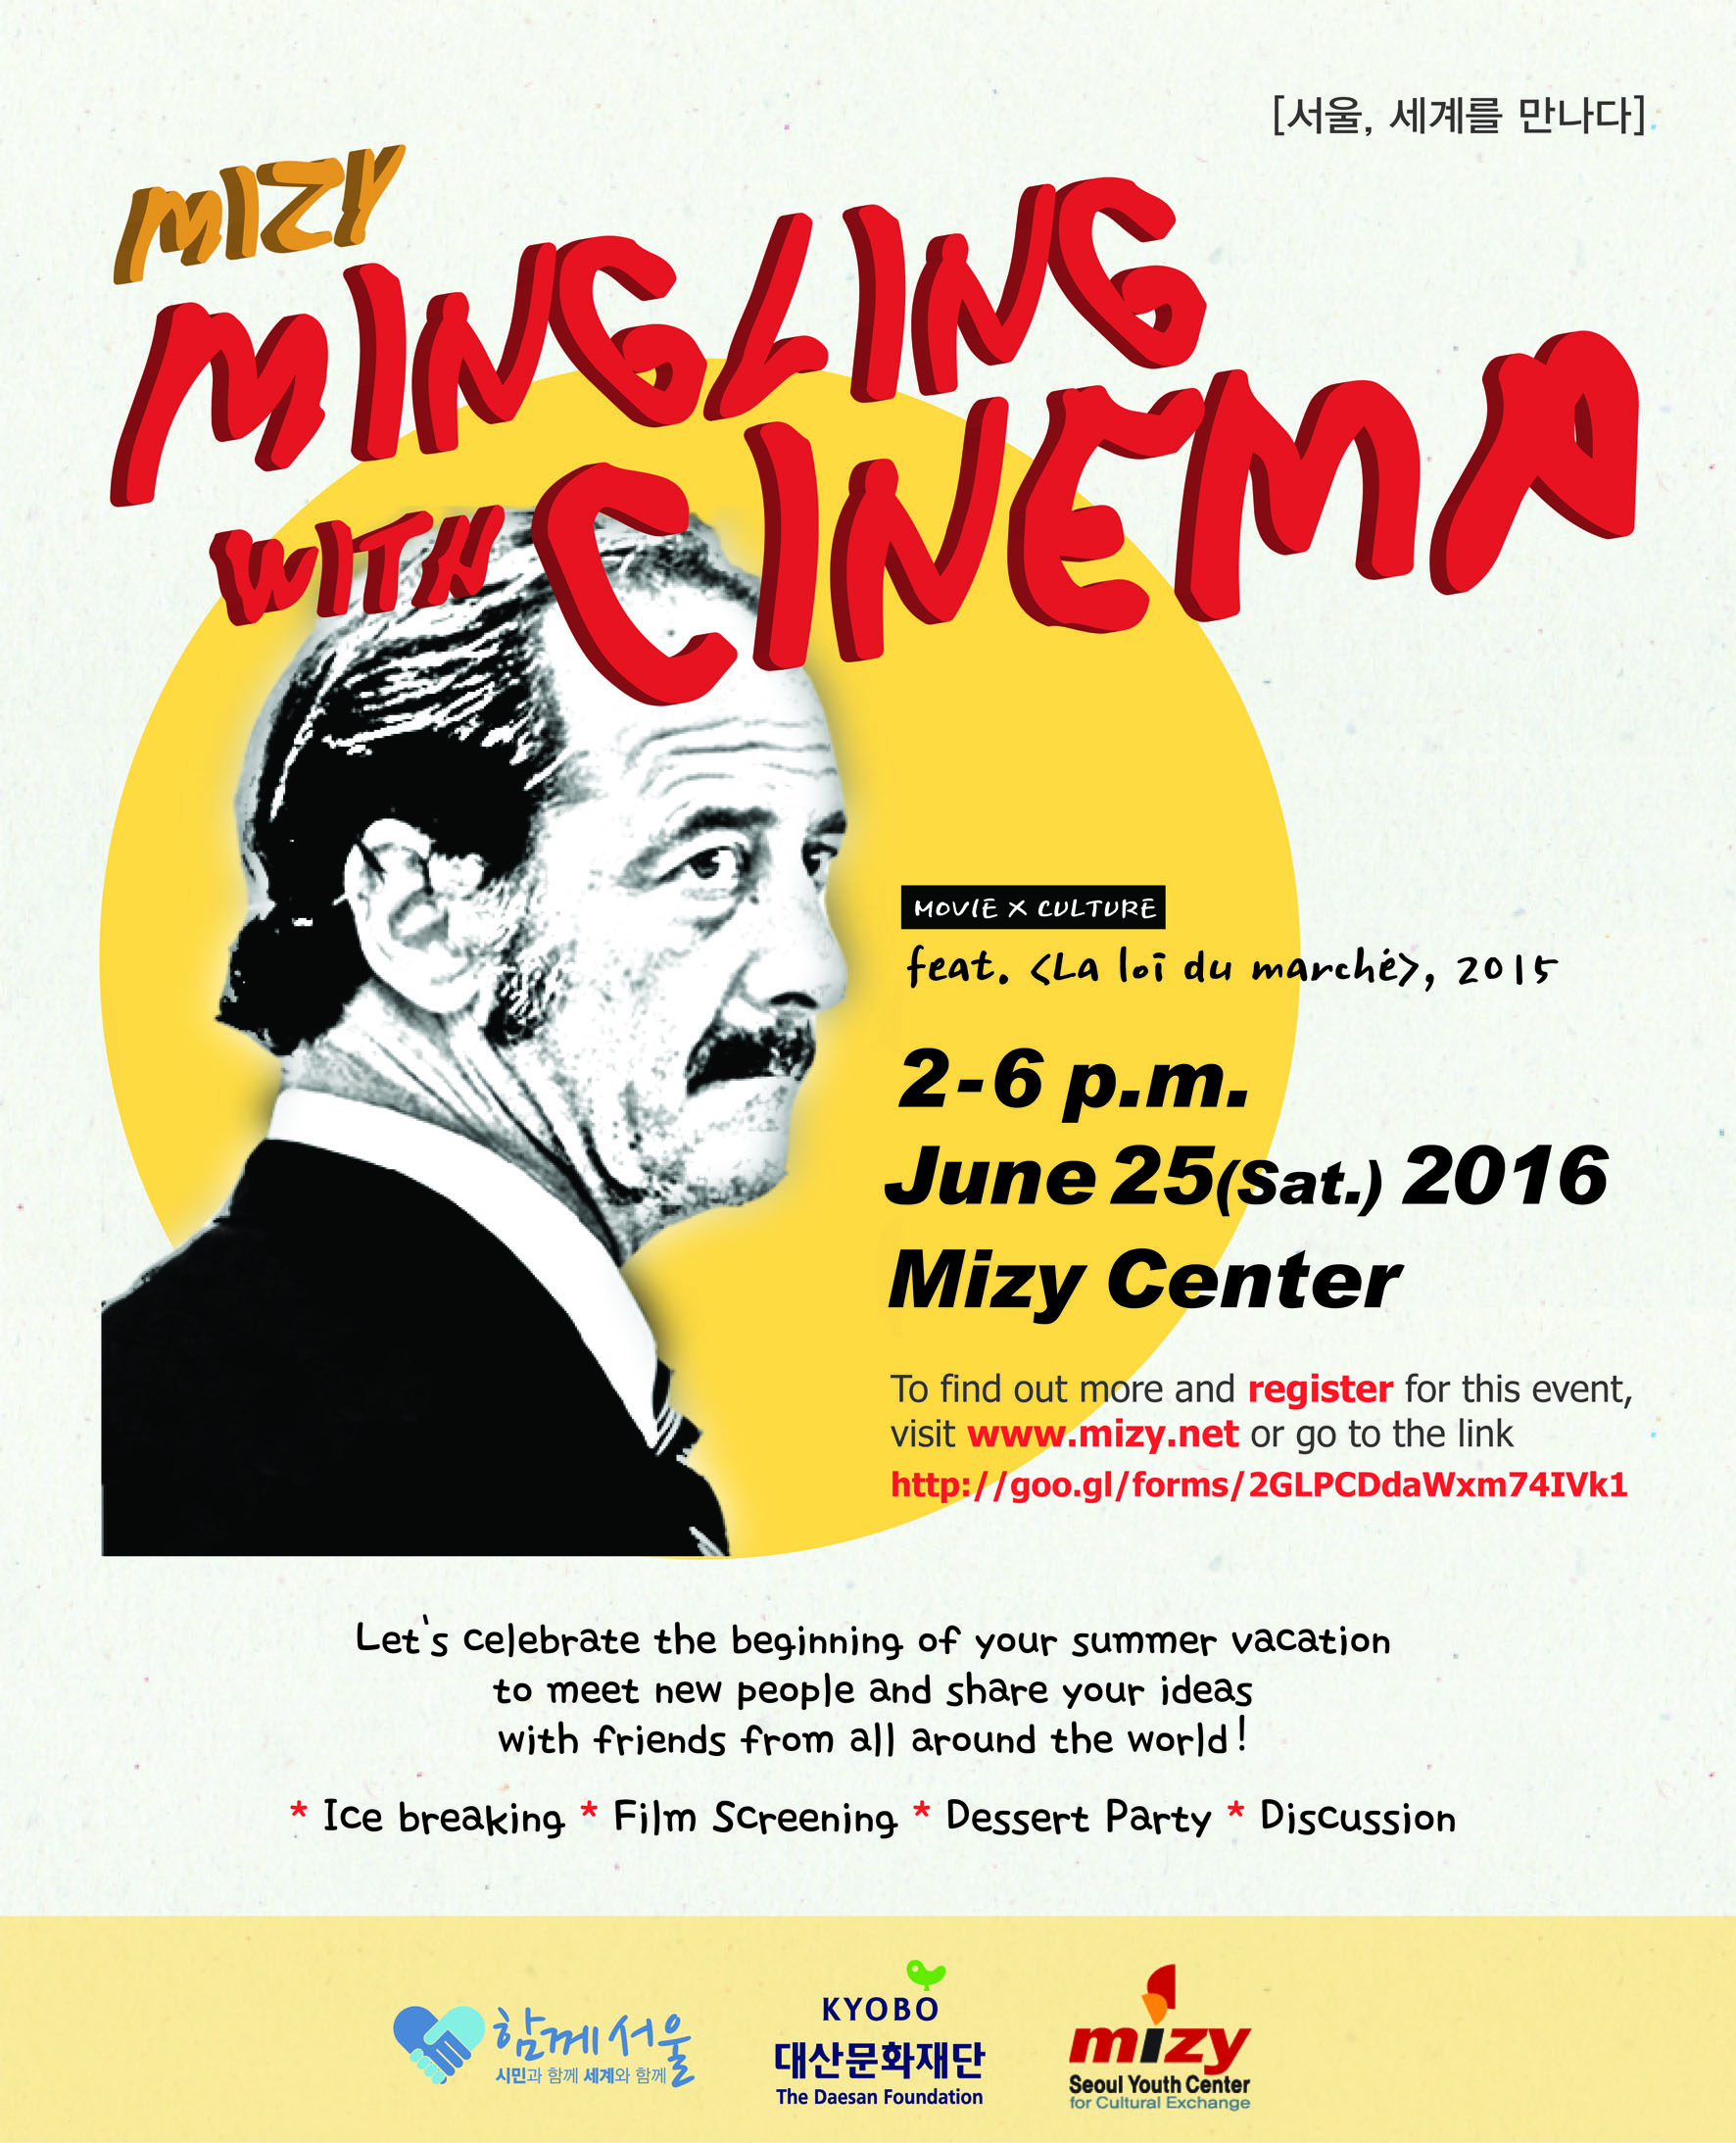 Mizy Mingling with Cinema